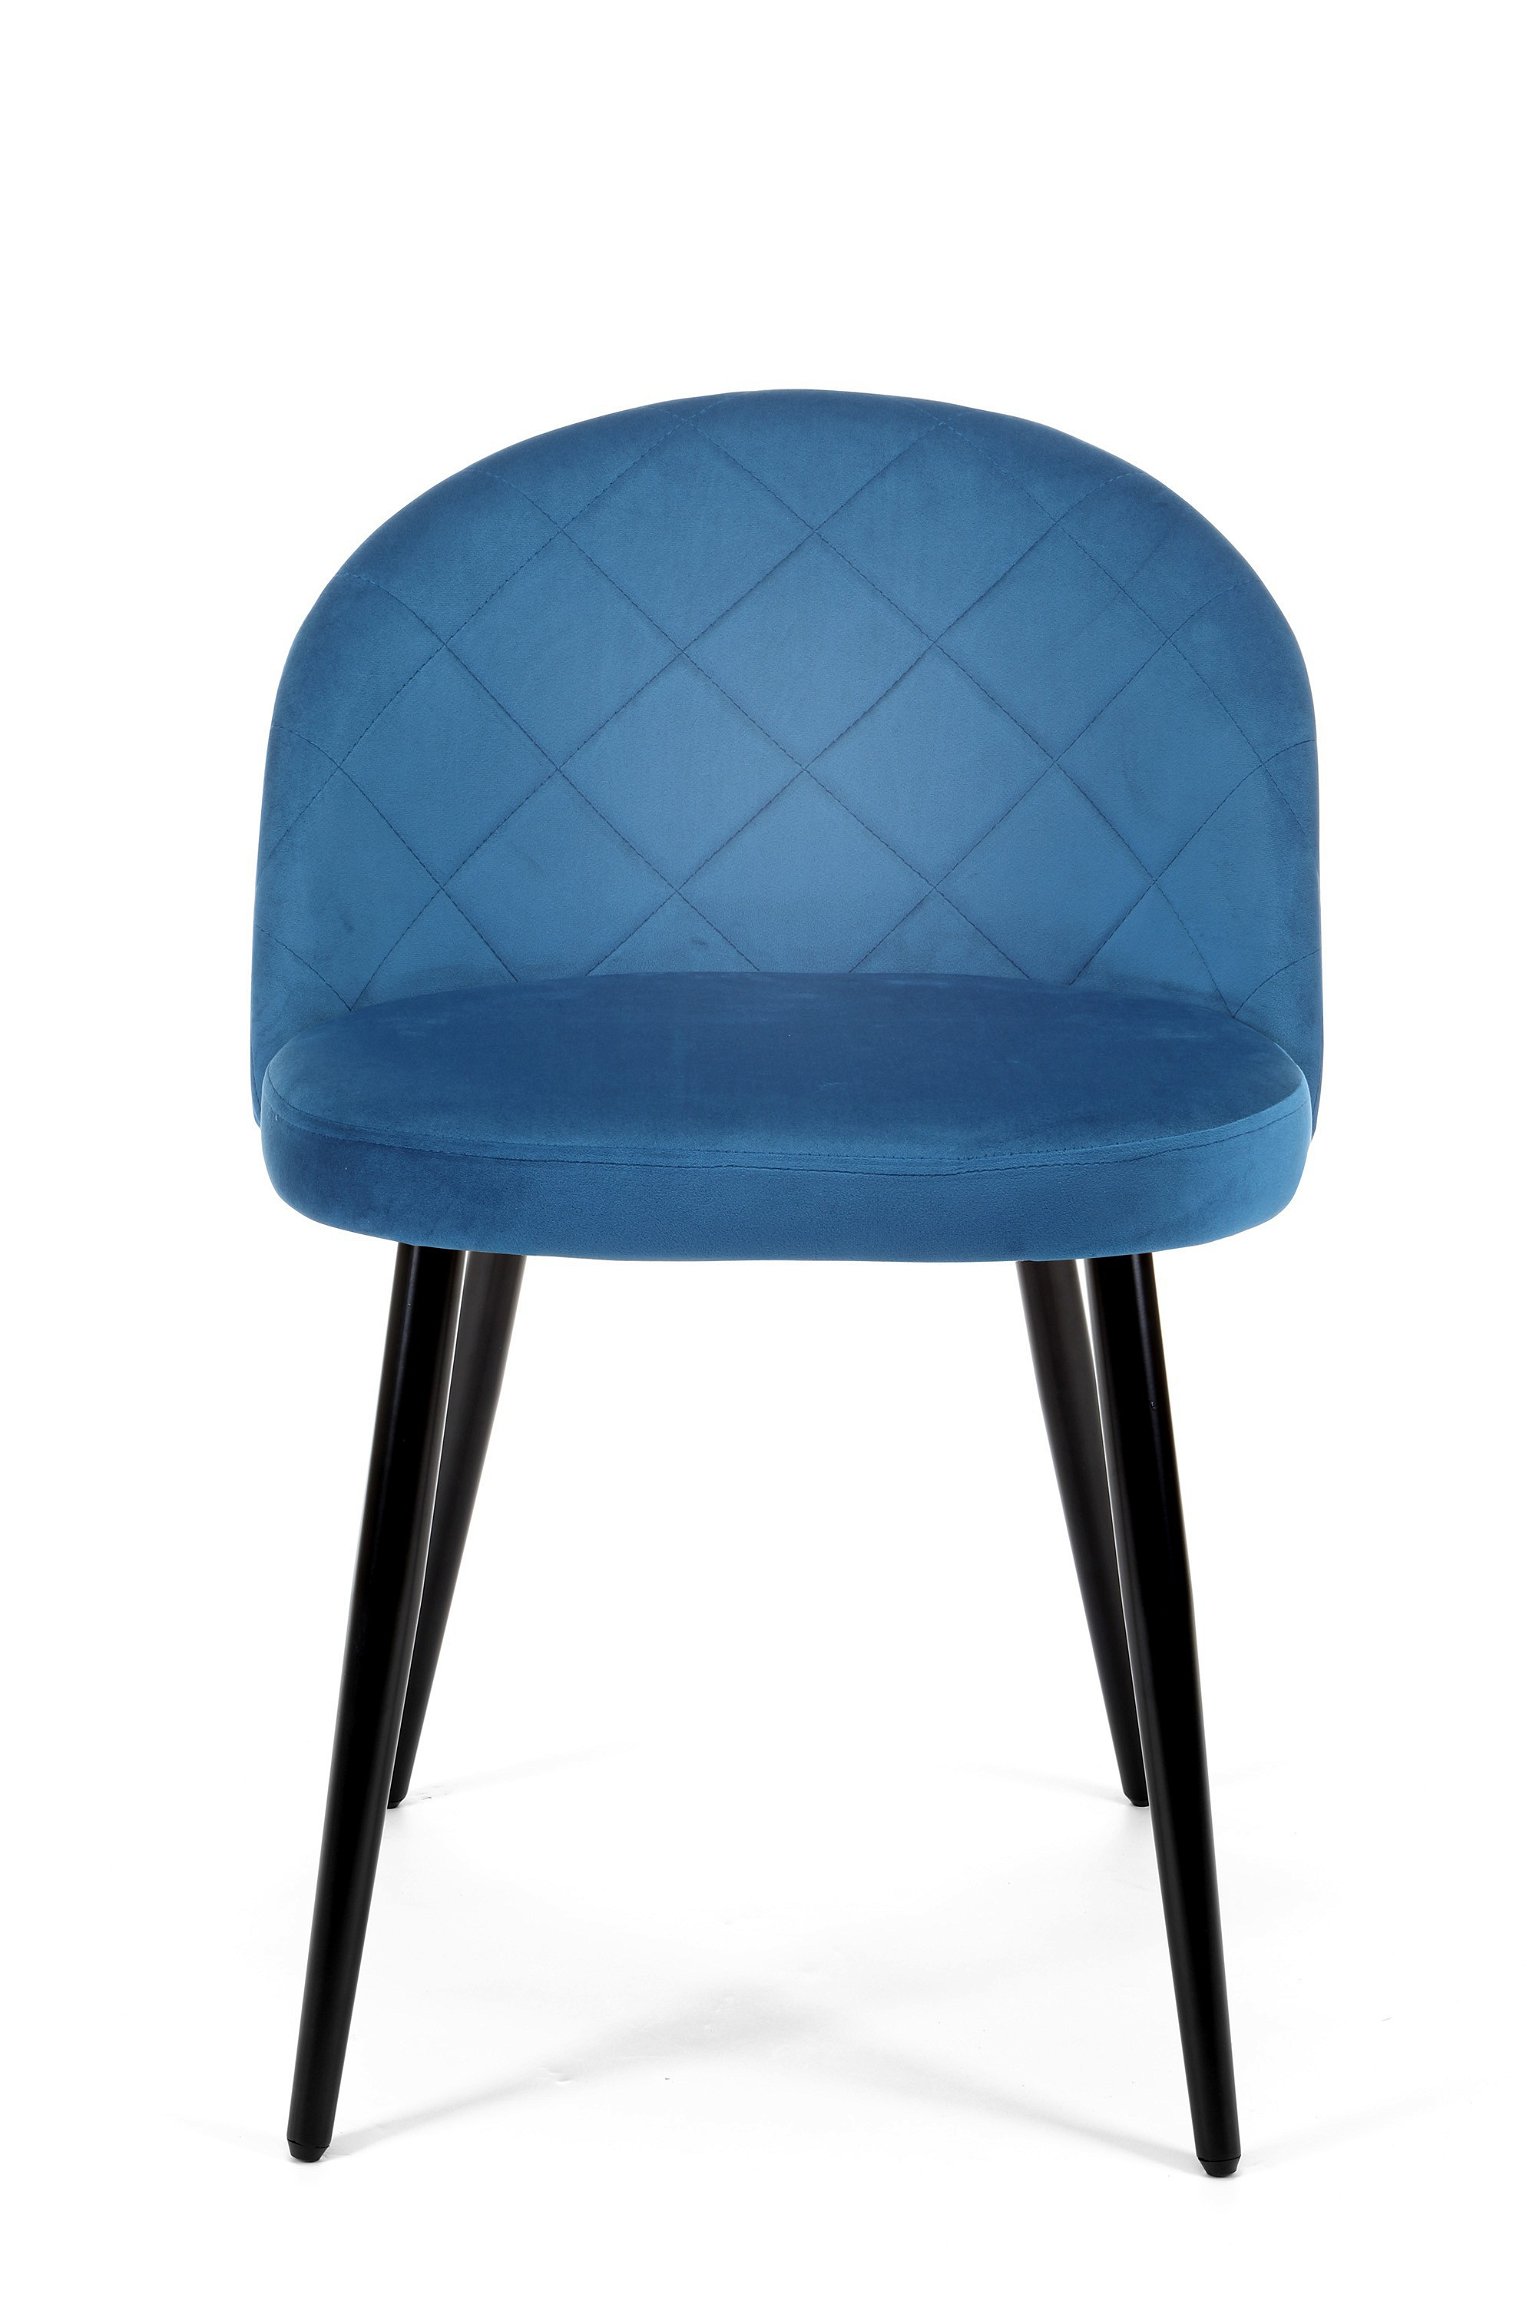 4-ių kėdžių komplaktas SJ.077, tamsiai mėlyna - 6